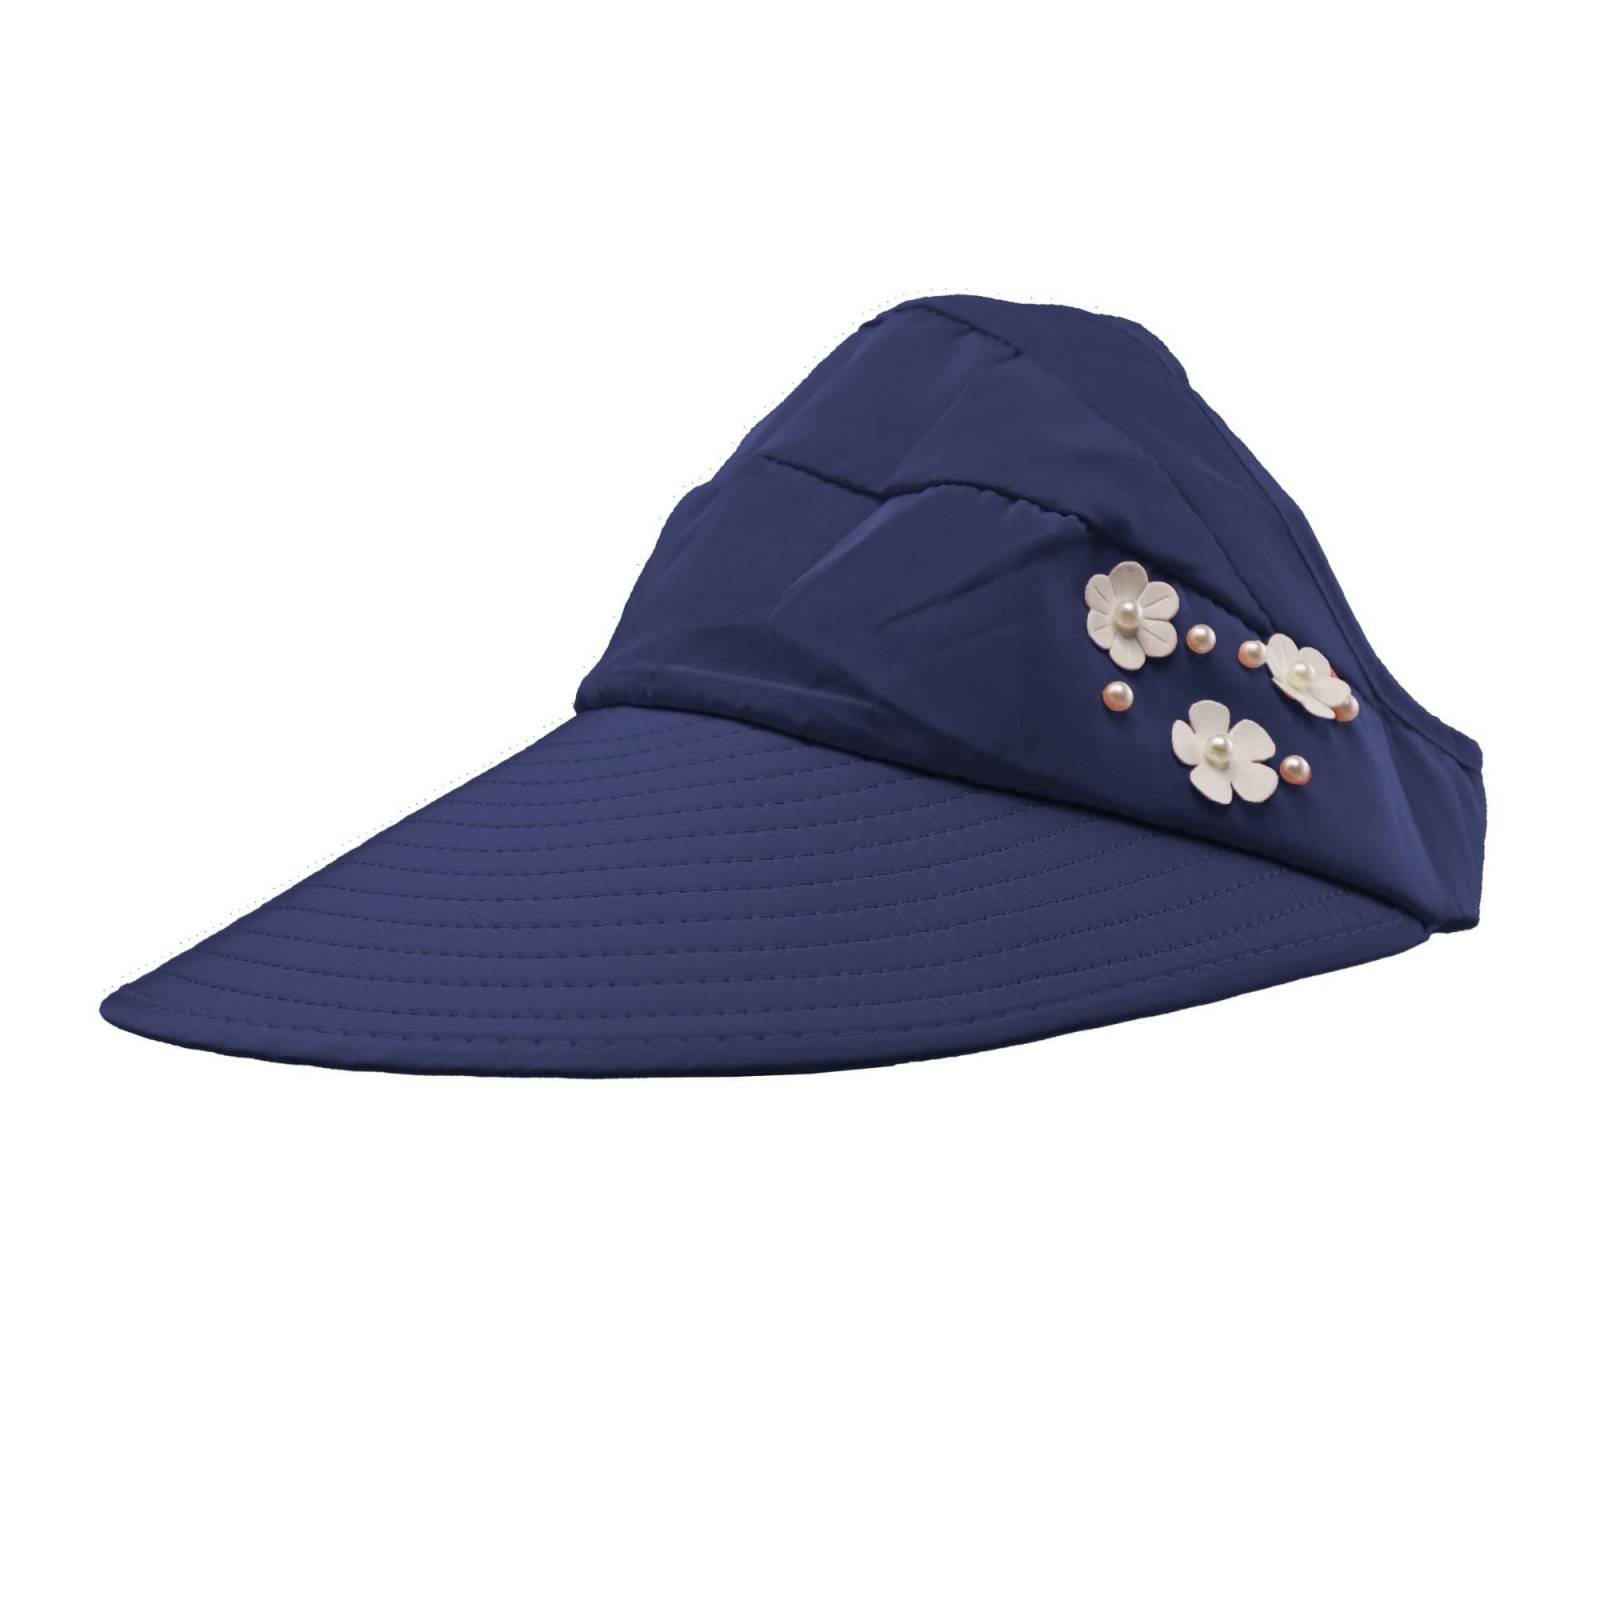 Sombrero Para Sol Dama Playa Primavera Verano Protección Uv (Azul)